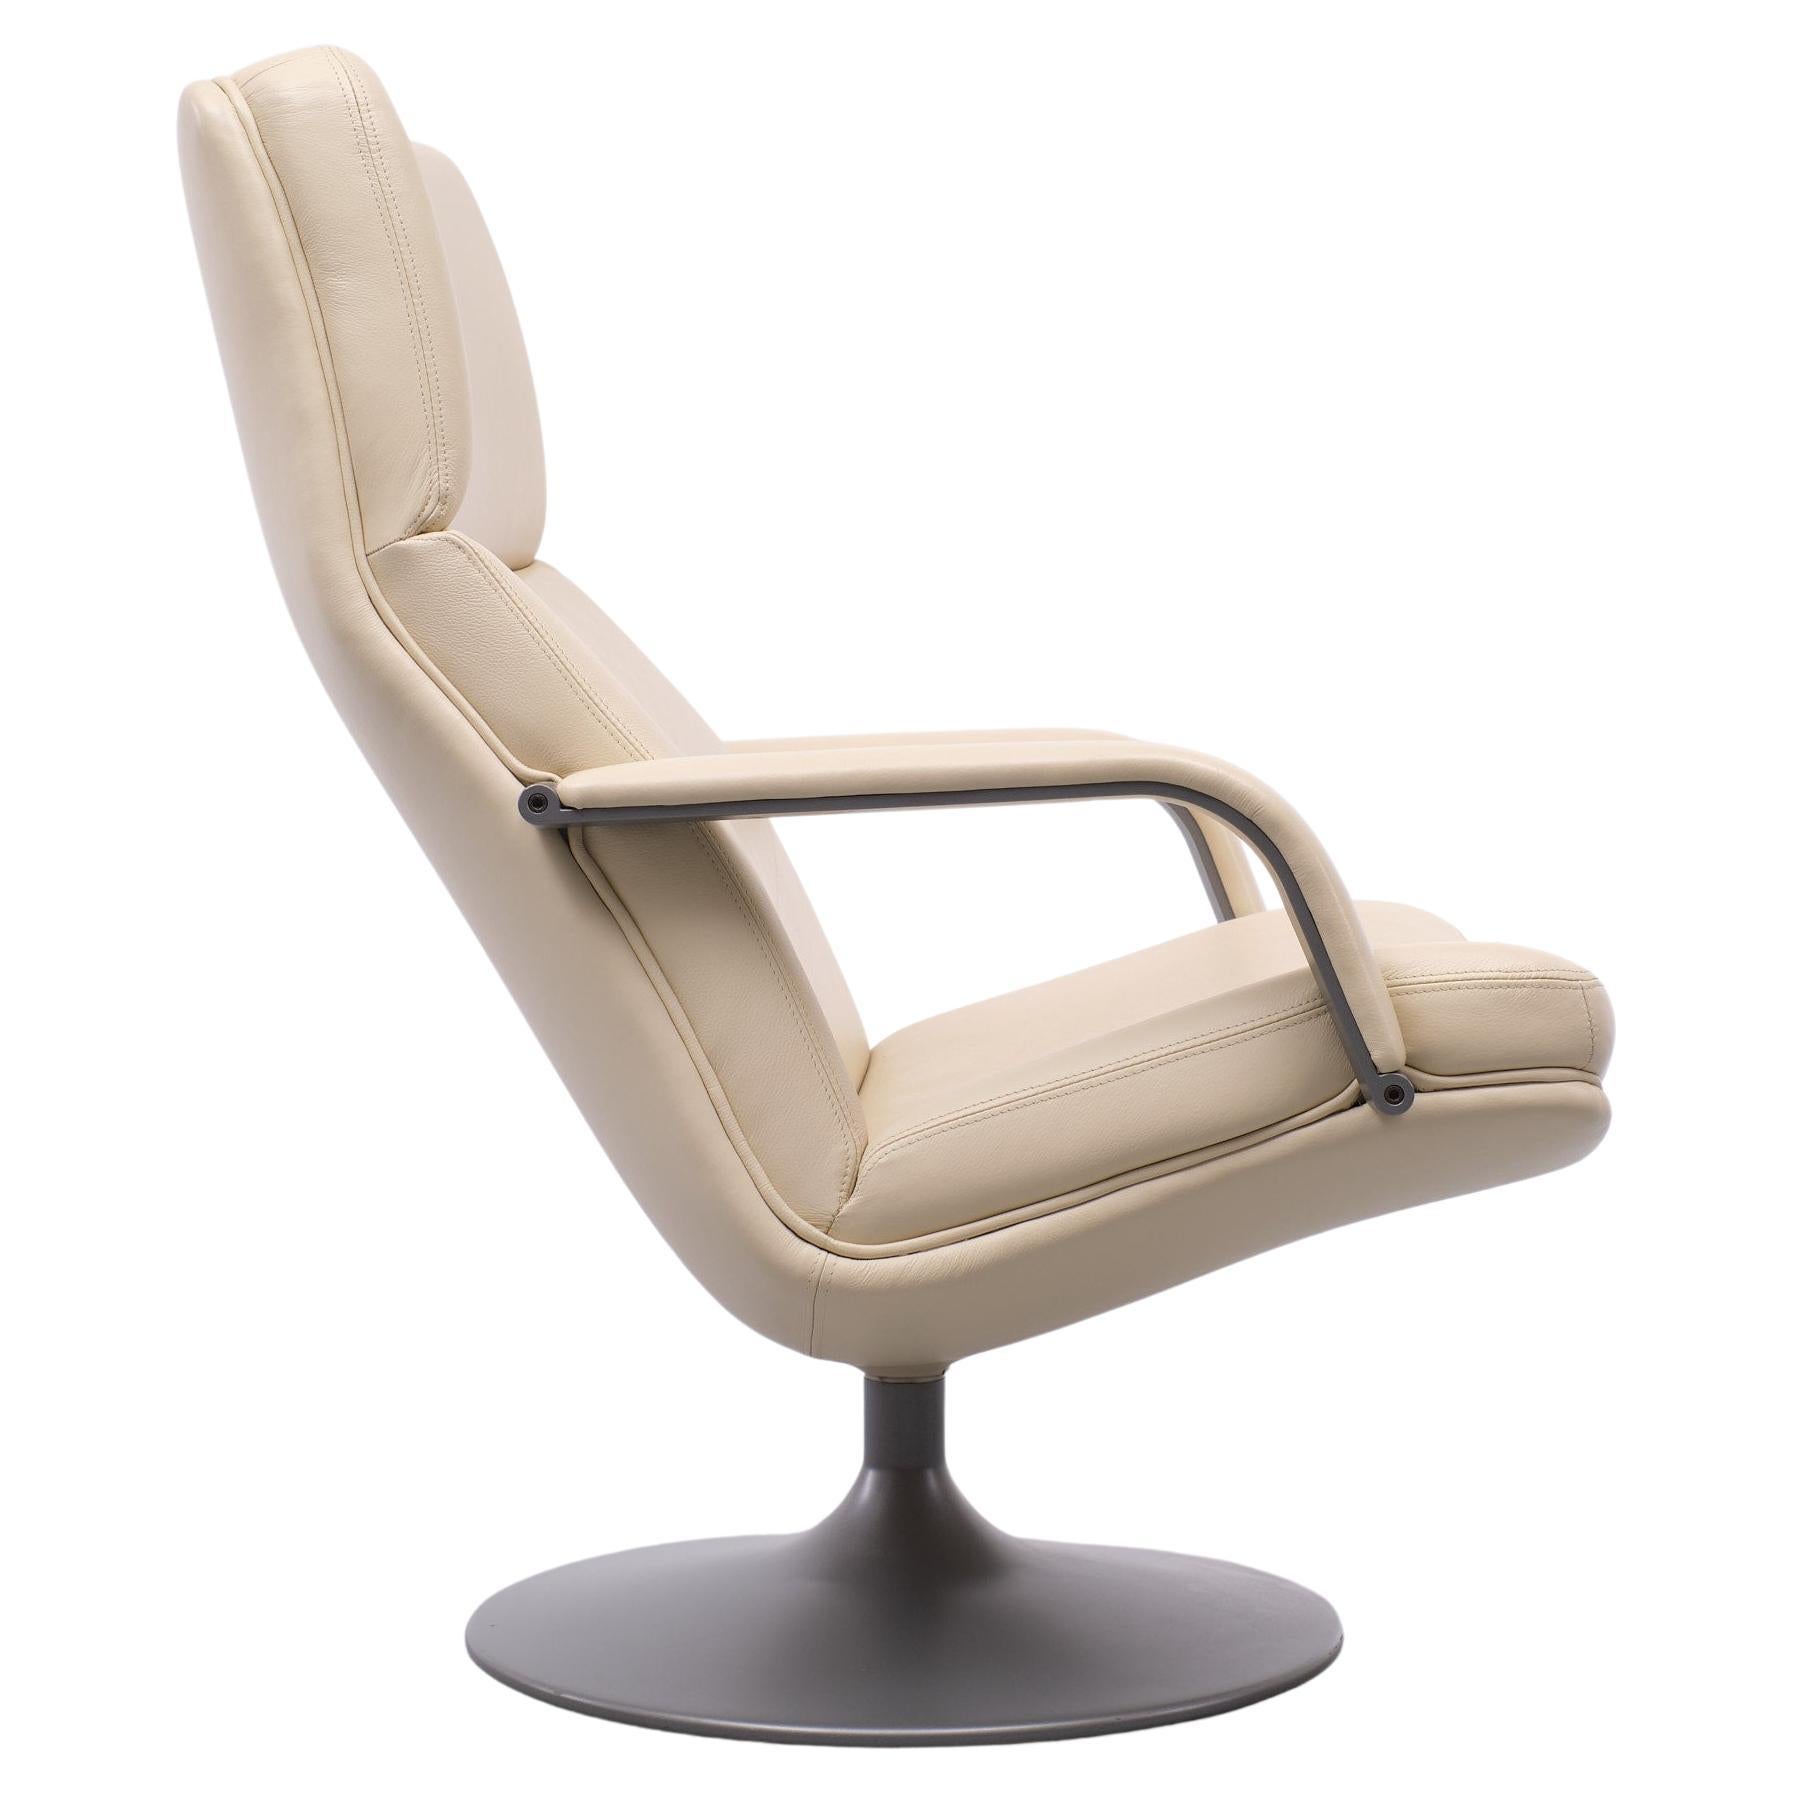 Belle chaise longue. Design/One pour Artifort, modèle F182 des années 1960 
Elegant et bien conçu. Très bon état. Sellerie en cuir couleur crème. Sur une base en métal gris. Tourner capable. Bon confort d'assise.